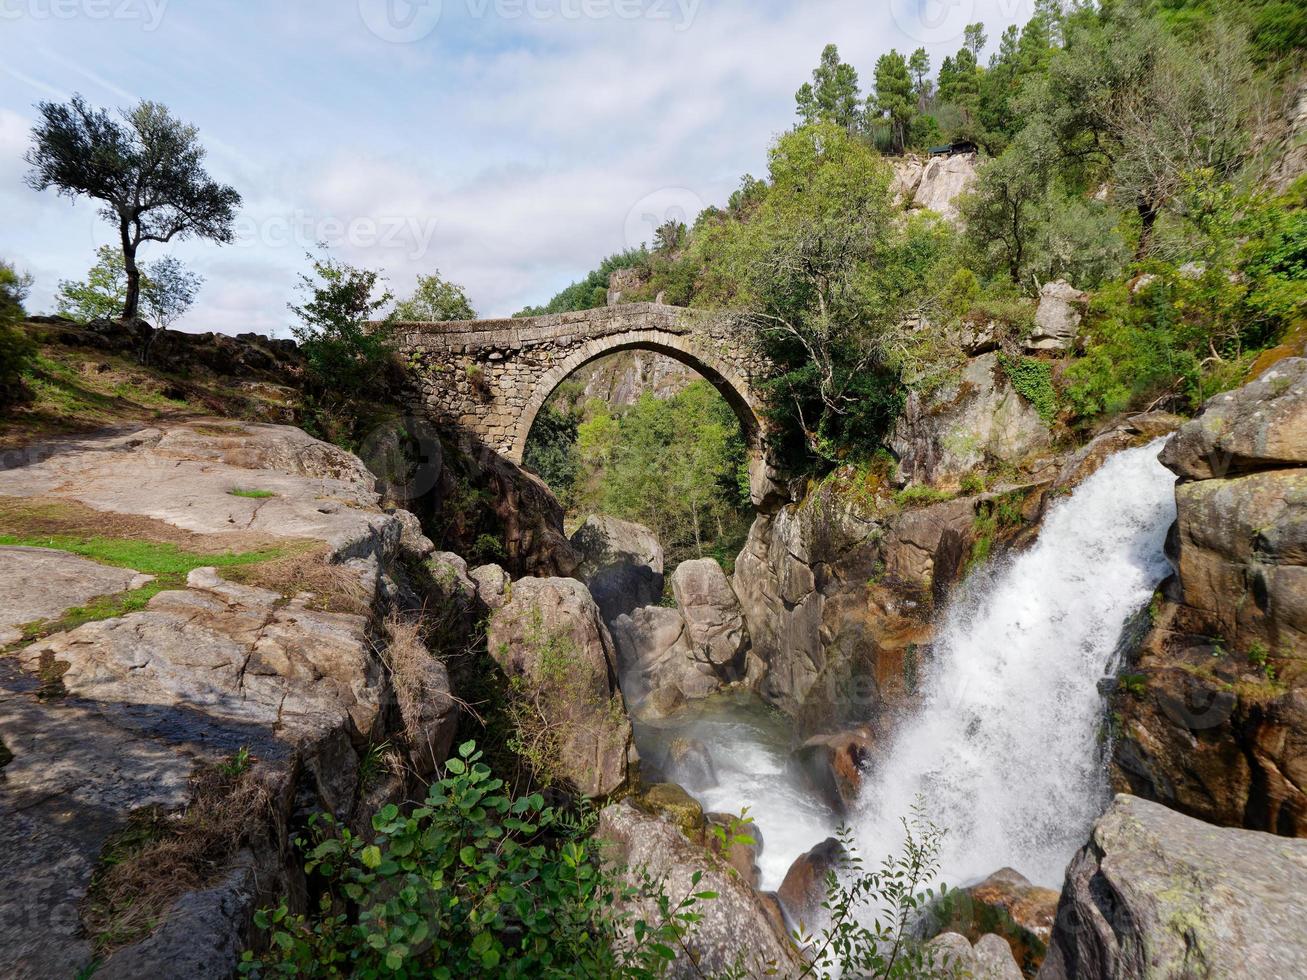 ponte da misarela ou ponte da mizarela em montalegre, portugal com uma grande cachoeira ao lado durante um dia ensolarado. viagens rurais e férias na natureza. foto